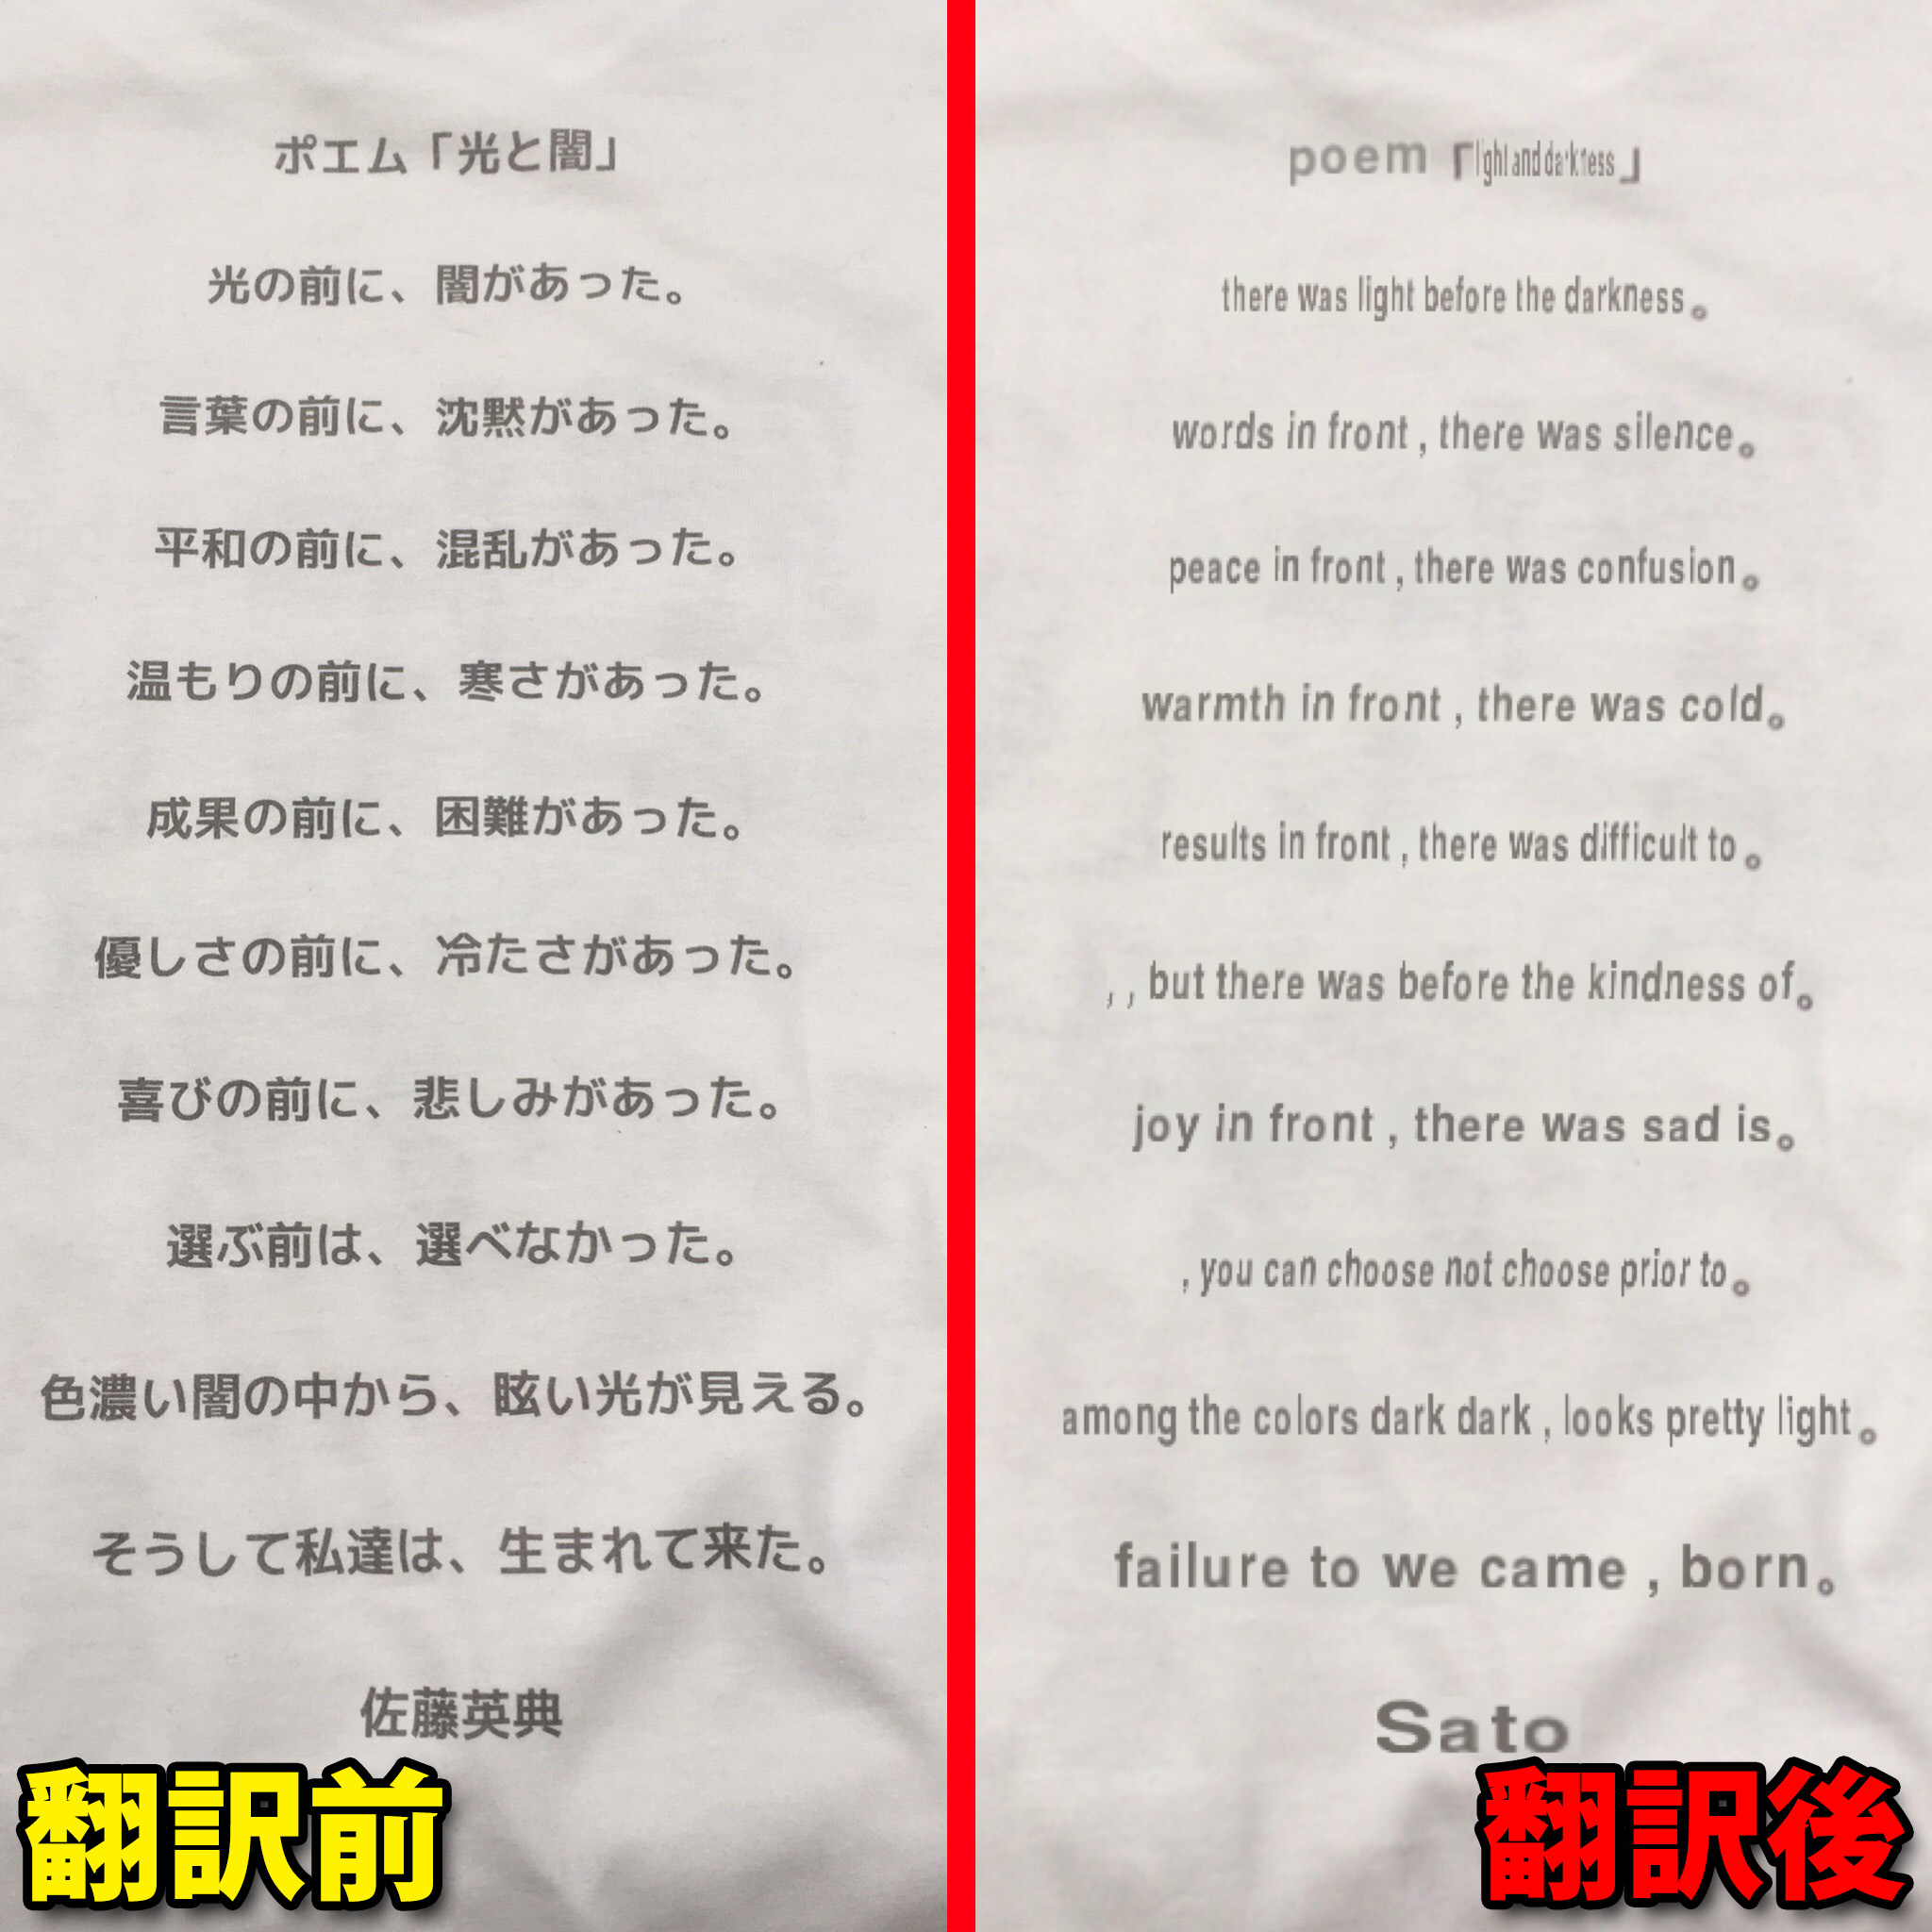 動画 スマホをかざすだけで翻訳できる Word Lens が日本語対応に 機能を訴求したokamoto Sのpr動画がカッコイイ ロケットニュース24